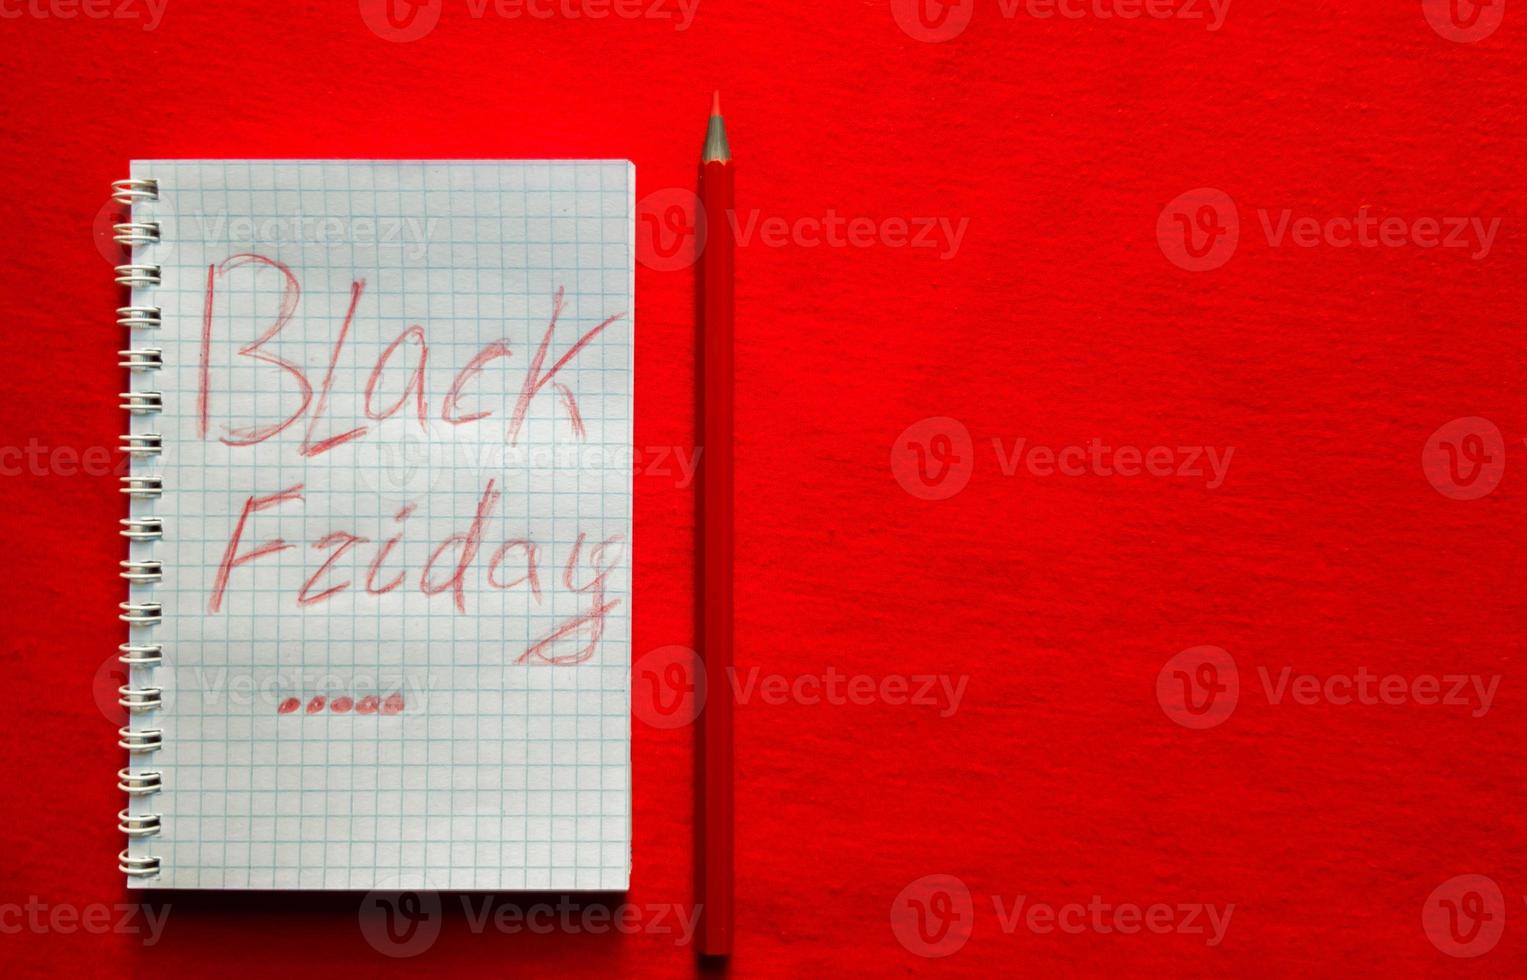 schwarzer freitag-verkaufstext geschrieben auf einem notizblock mit einem roten bleistift auf rotem hintergrund. hintergrund, urlaubskonzept. schwarzer freitag - internationaler tag des einkaufs, aktionen, rabatte, verkäufe. foto